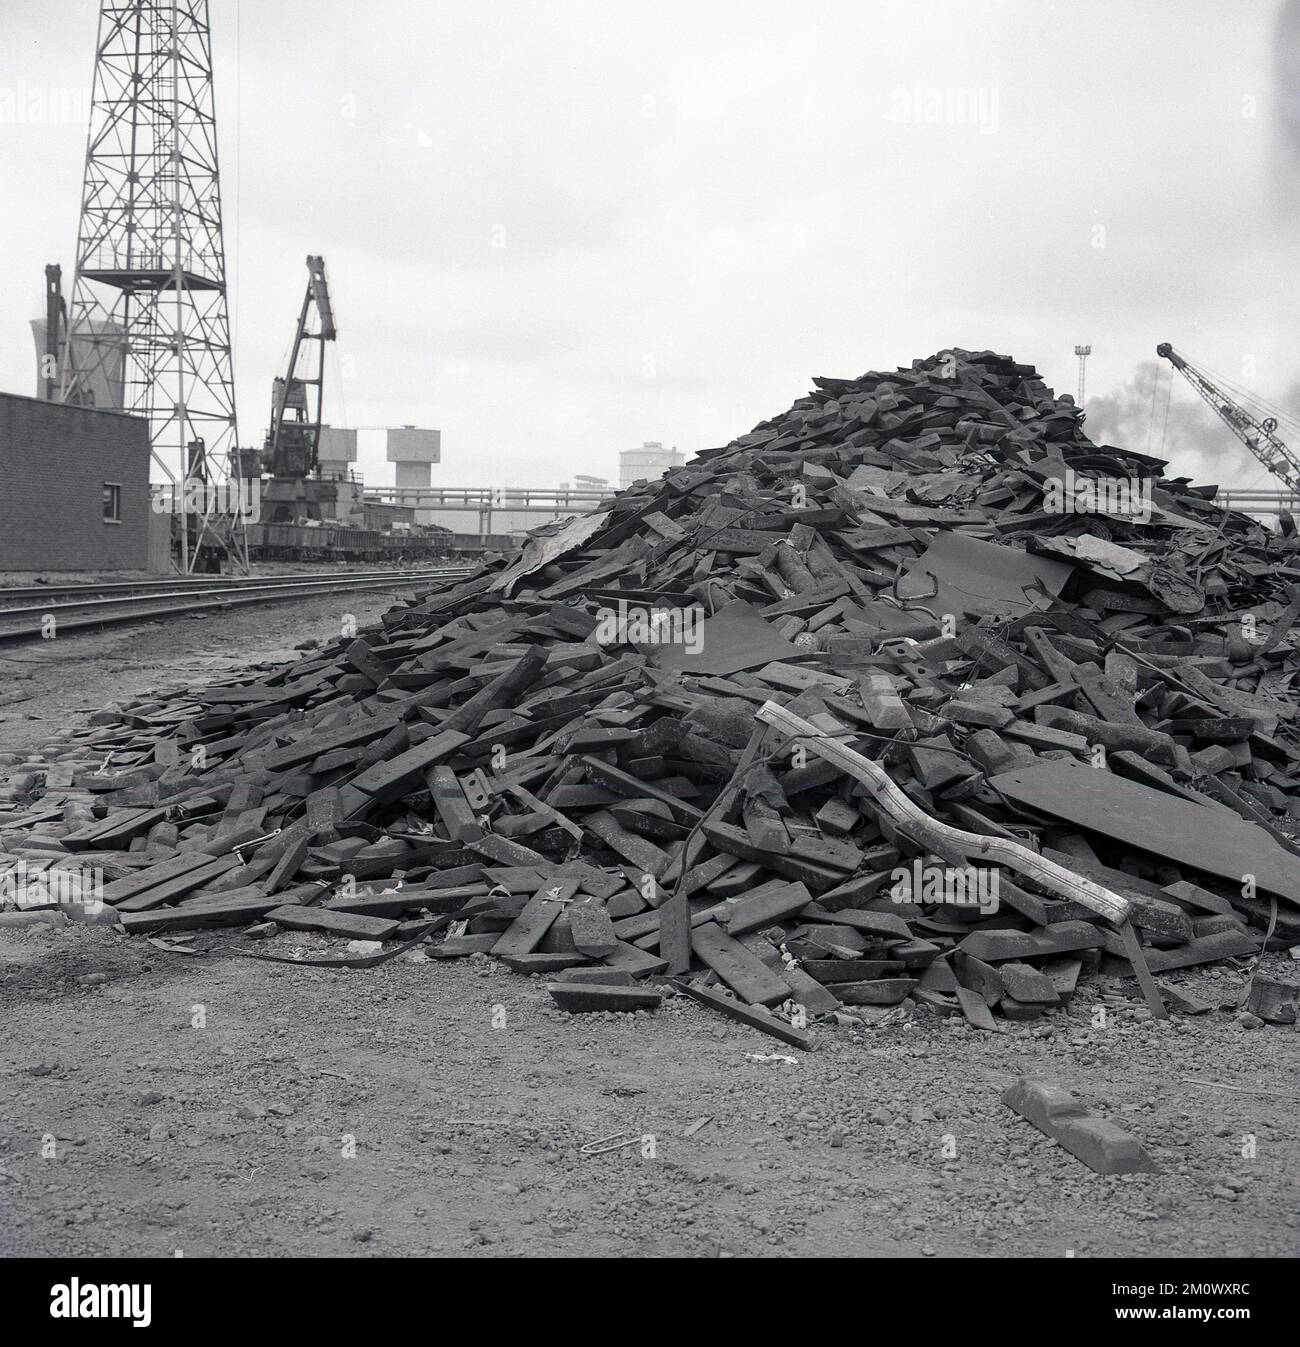 Années 1950, historique, aciéries, une pile de déchets industriels reposait dans une pile à l'extérieur de l'abbaye de Port Talbot, pays de Galles du Sud, Royaume-Uni. Banque D'Images